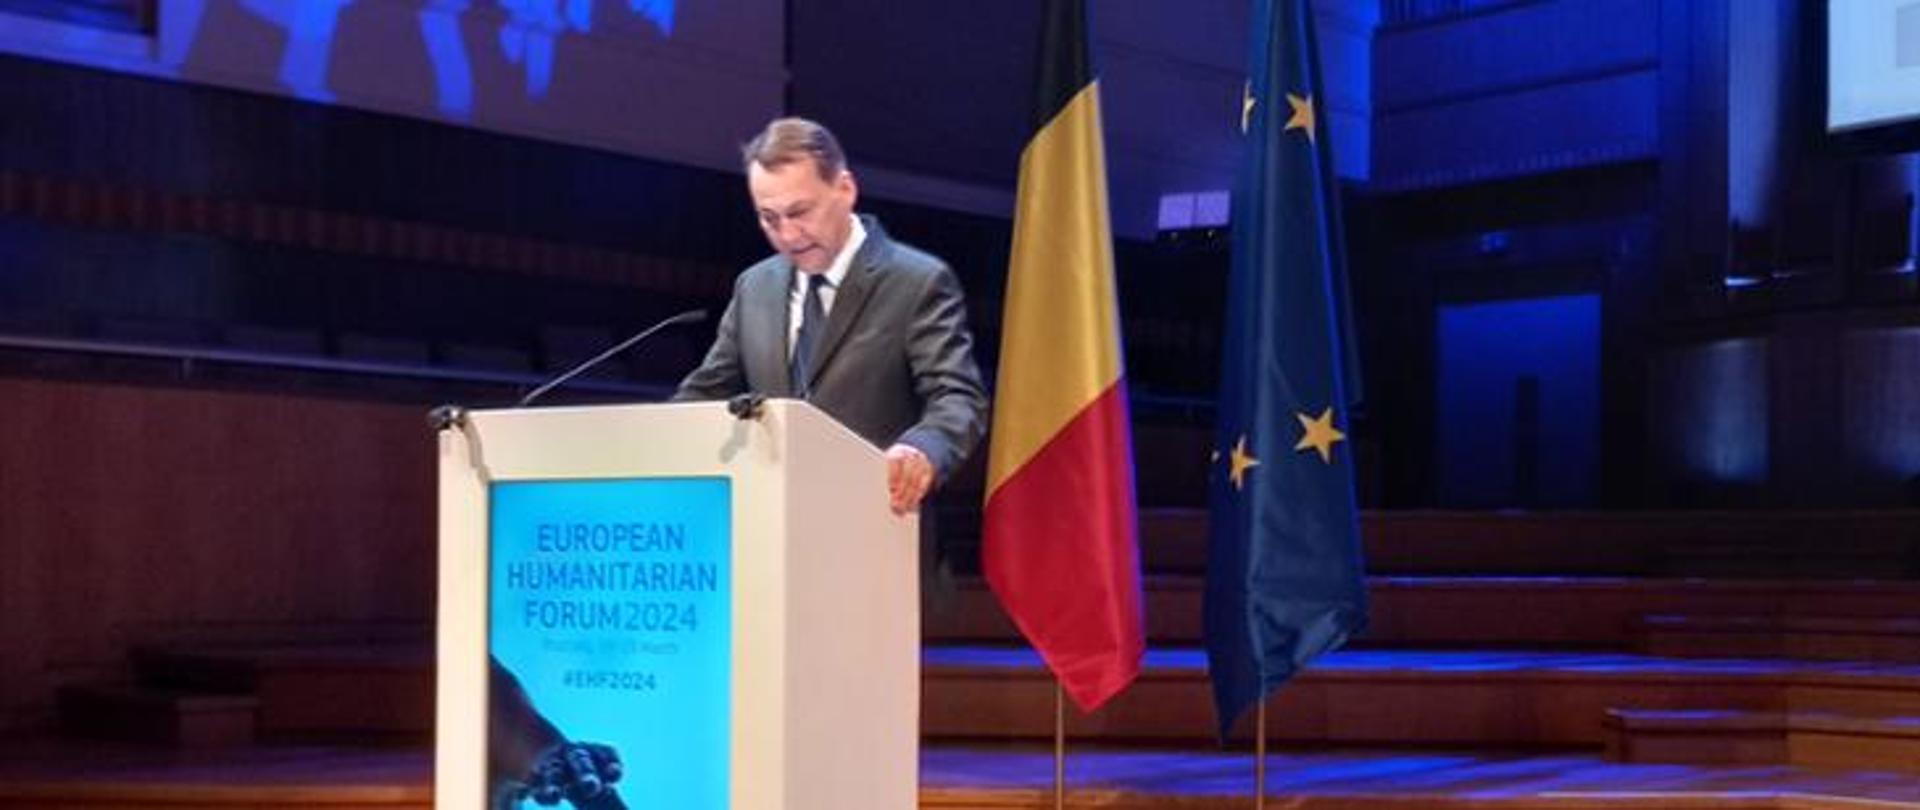 Mężczyzna w garniturze przemawia z podium z flagami Belgii i Unii Europejskiej w tle.